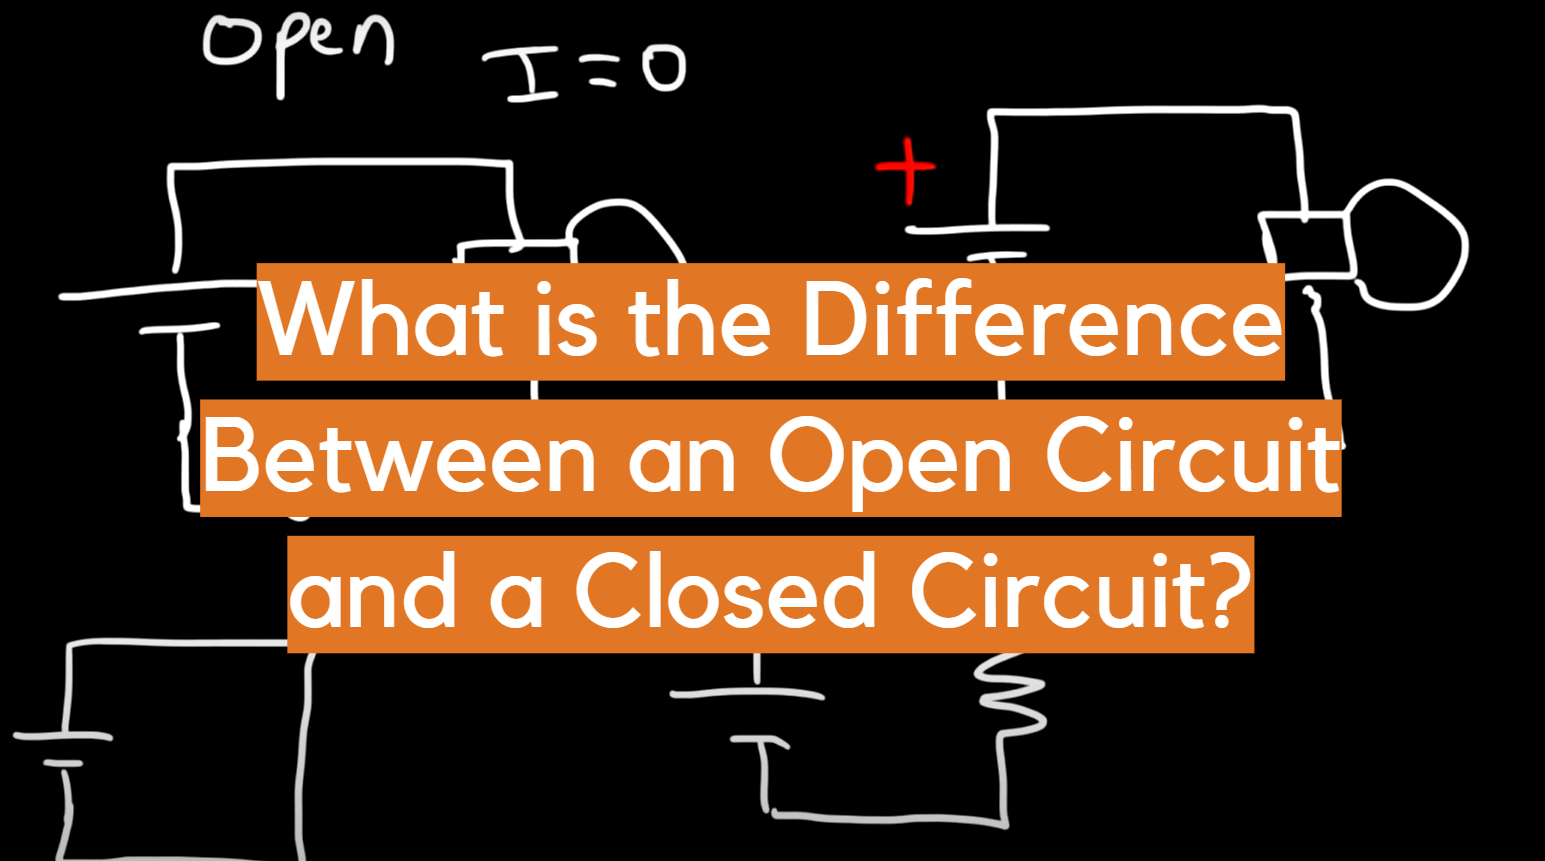 ¿Cuál es la diferencia entre un circuito abierto y un circuito cerrado?